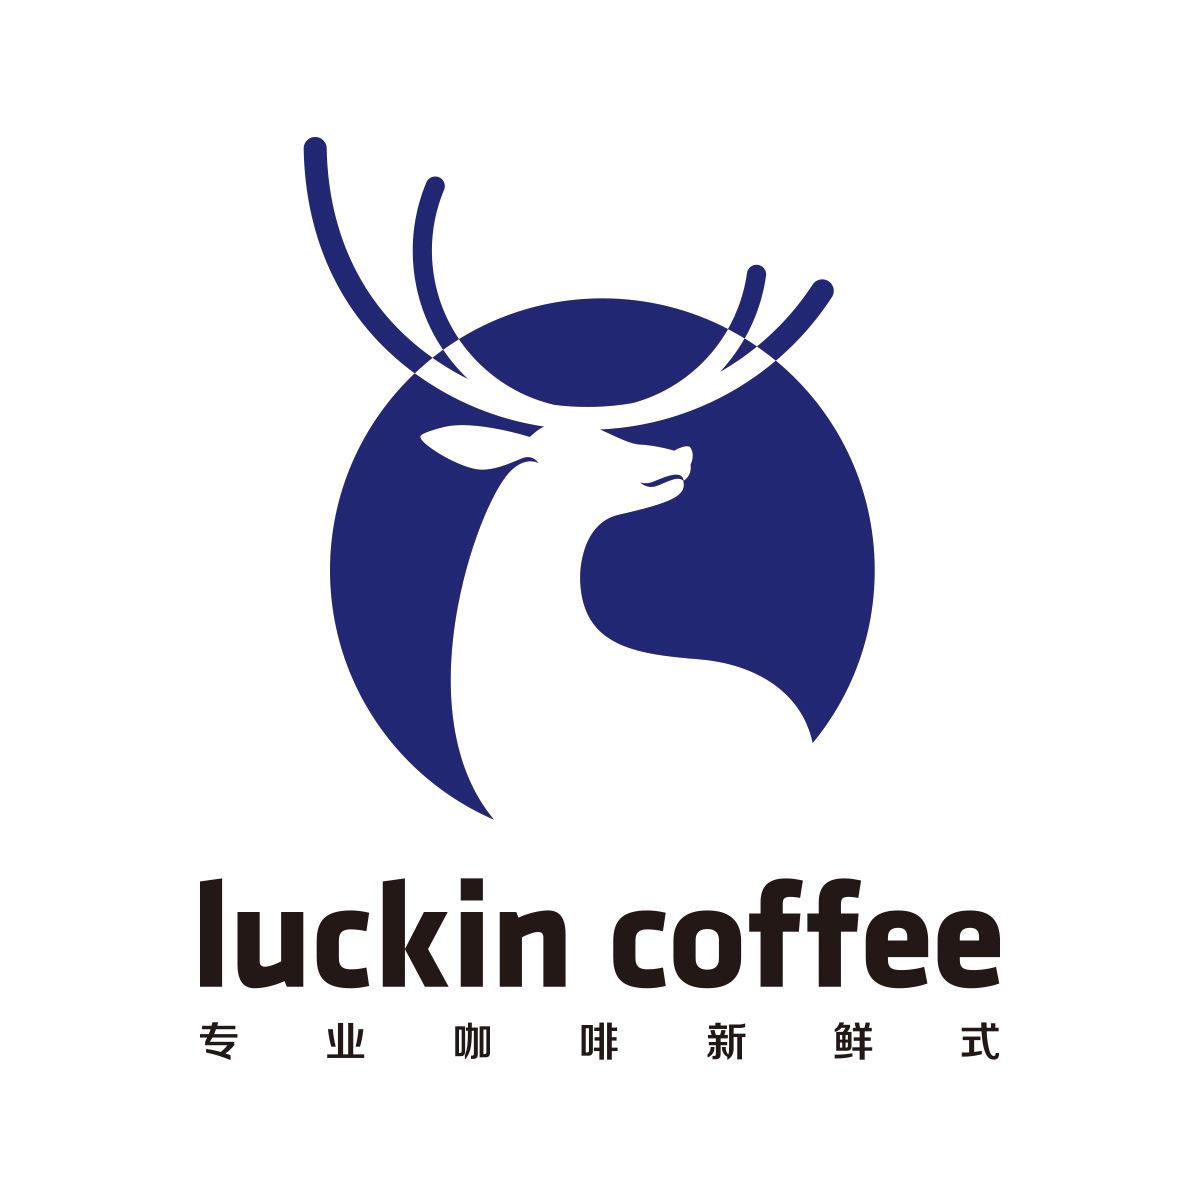 luckin coffee